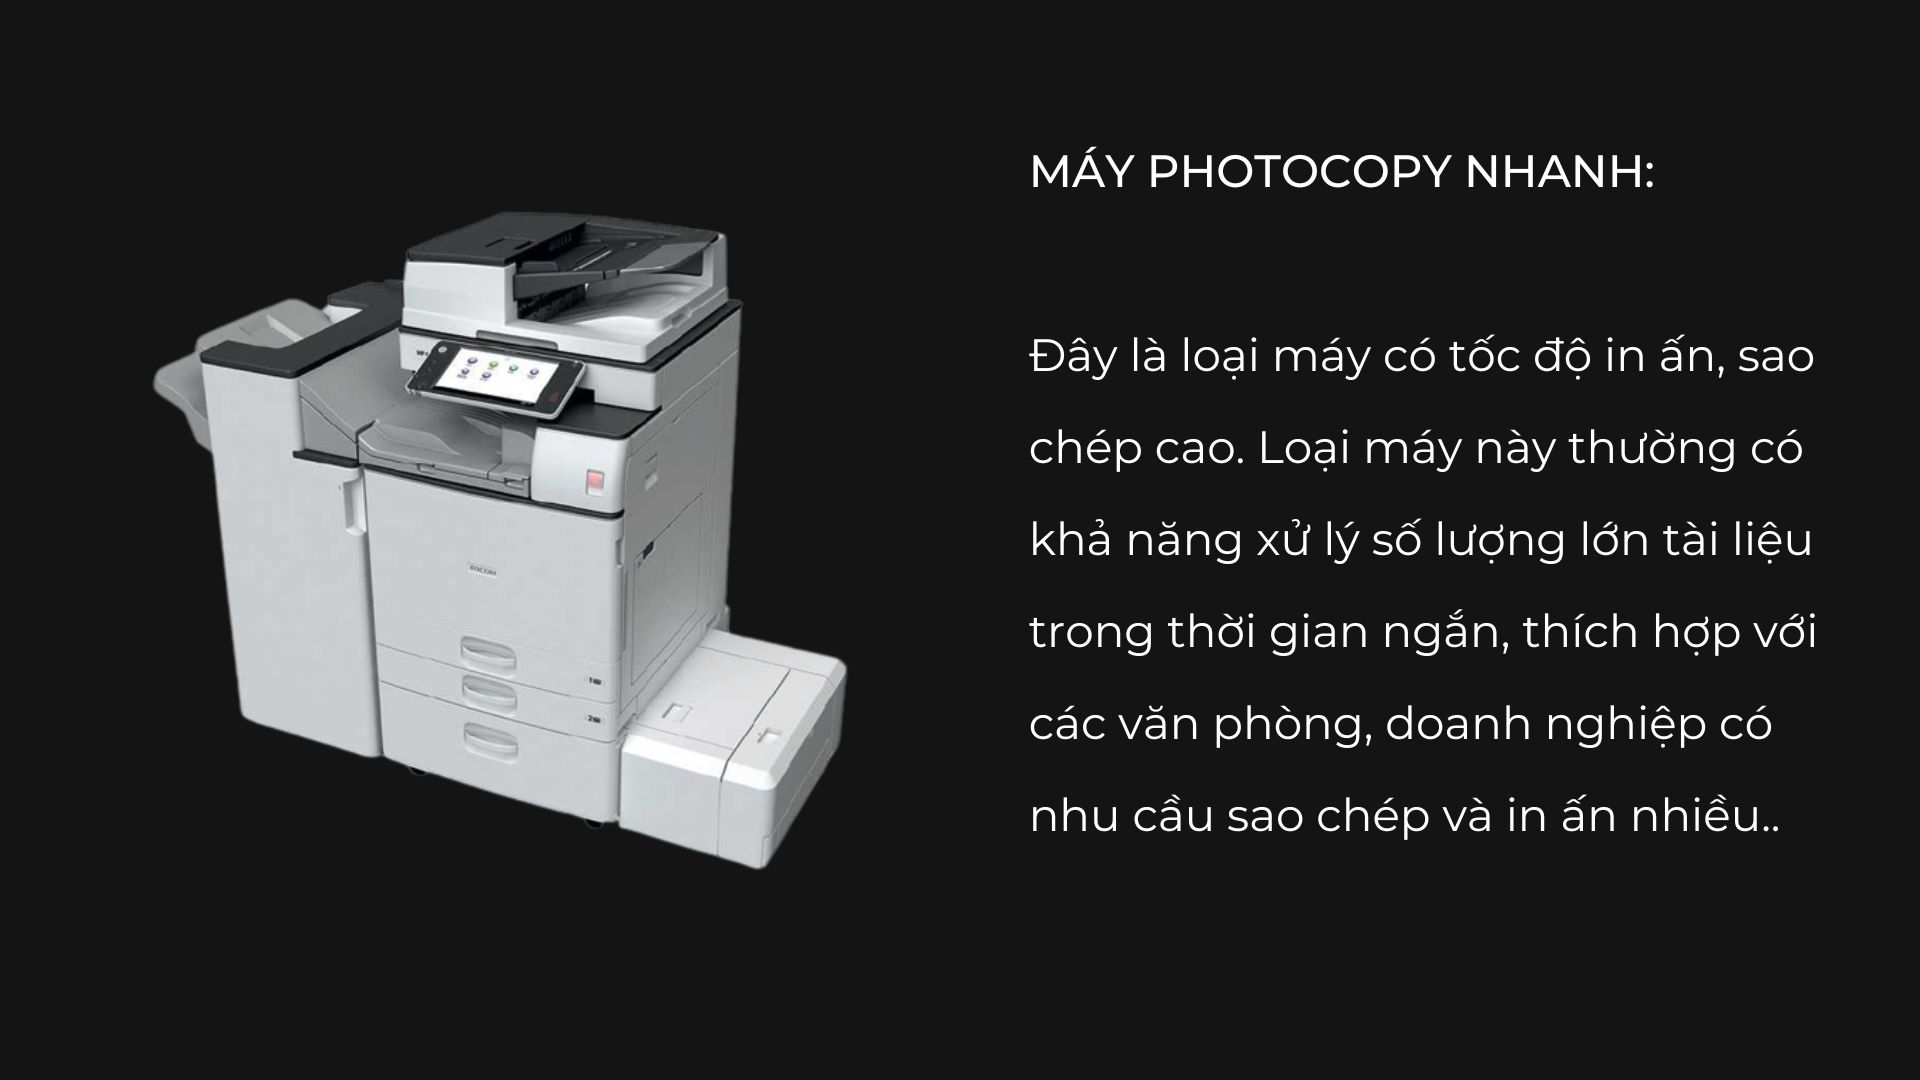 5-tieu-chi-lua-chon-may-photocopy-van-phong-cuc-chat-luong-06